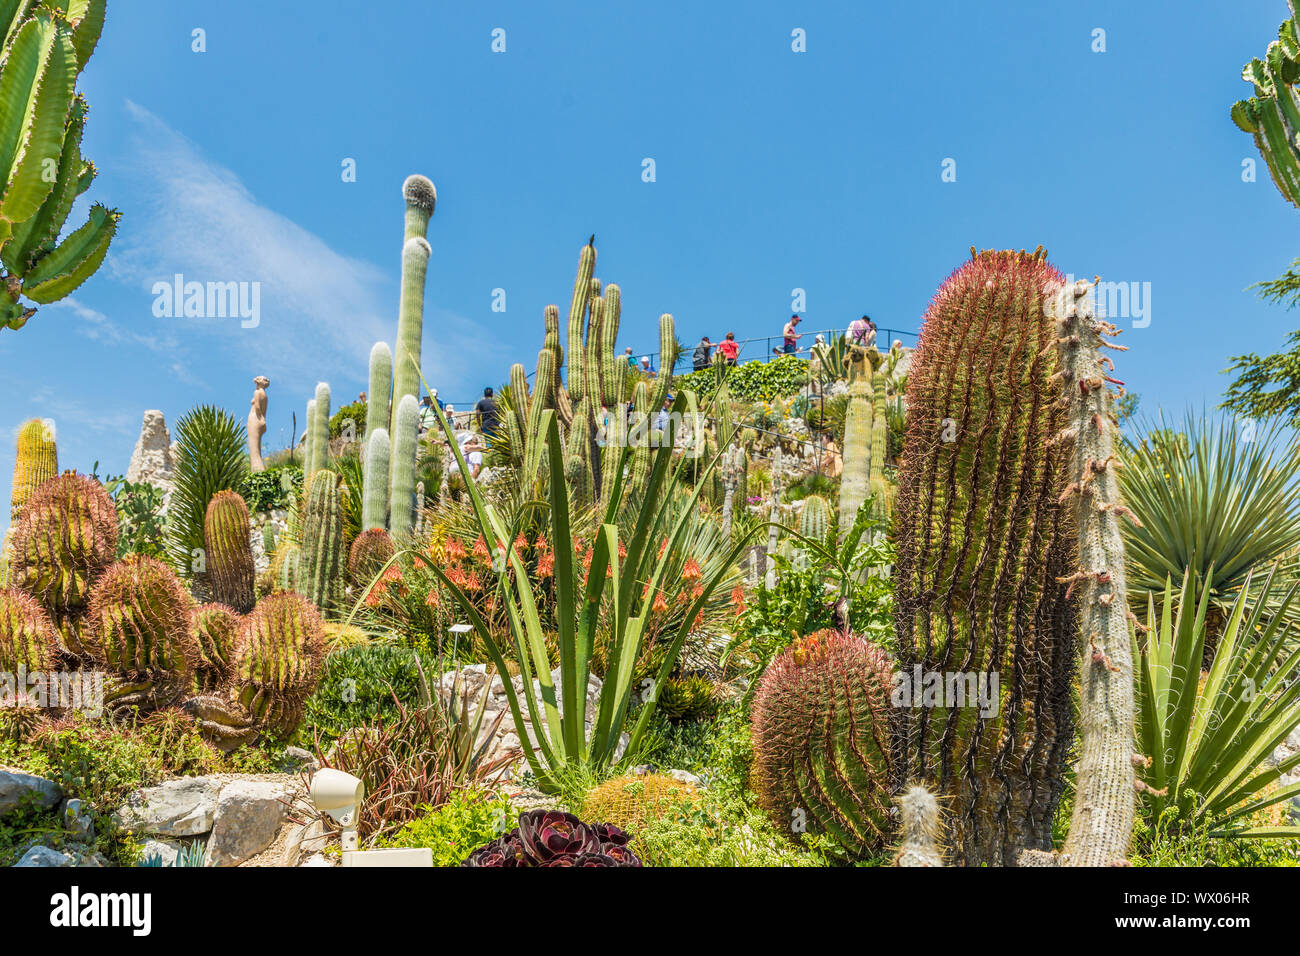 Le jardin de cactus dans le jardin exotique d'Eze, Eze, Alpes Maritimes, Provence Alpes Cote d'Azur, d'Azur, France, Europe, Méditerranée Banque D'Images